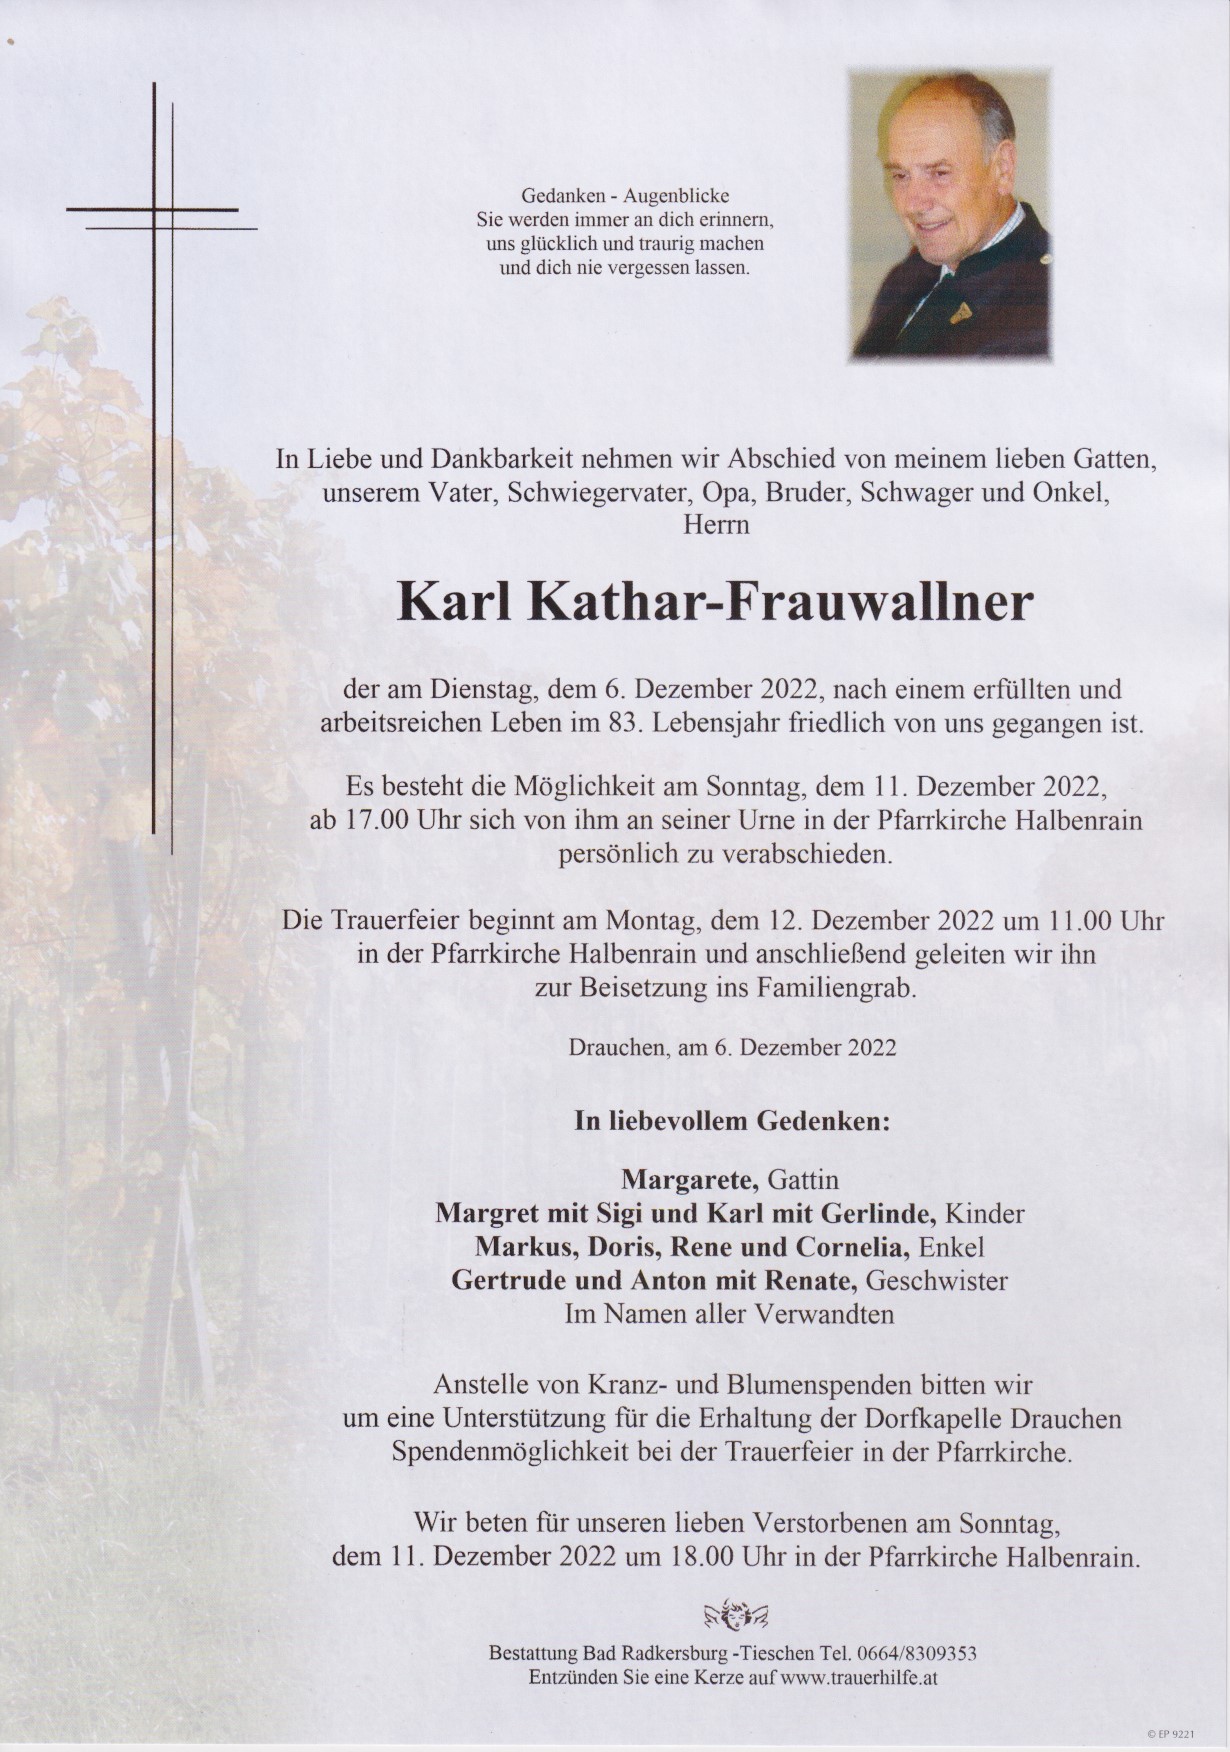 Karl Kathar-Frauwallner